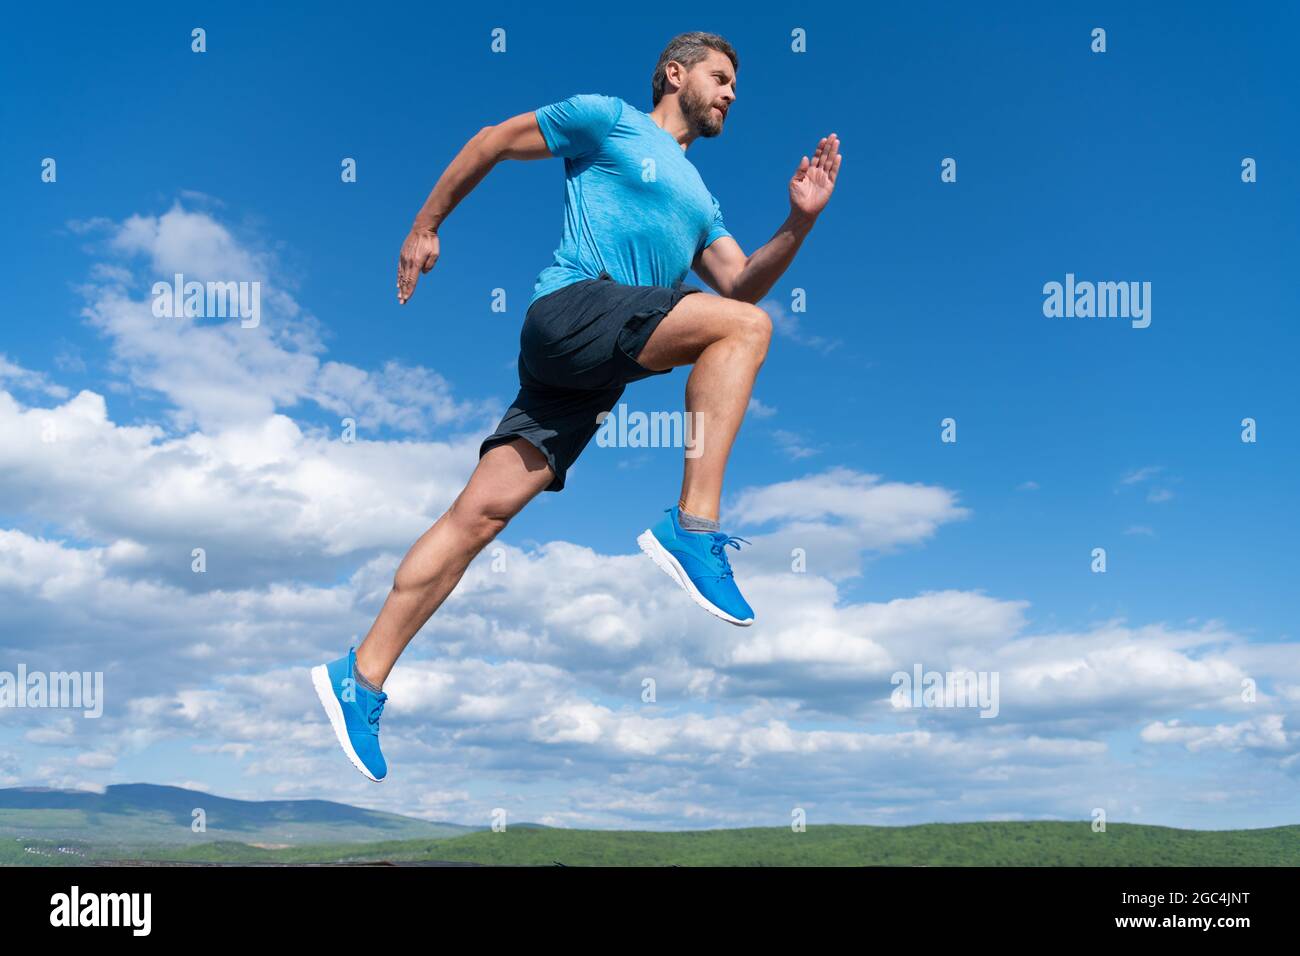 Sportler laufen schnell, um zu gewinnen. Mann Workout-Aktivität. Fitness Kerl tragen Sportbekleidung. Stockfoto